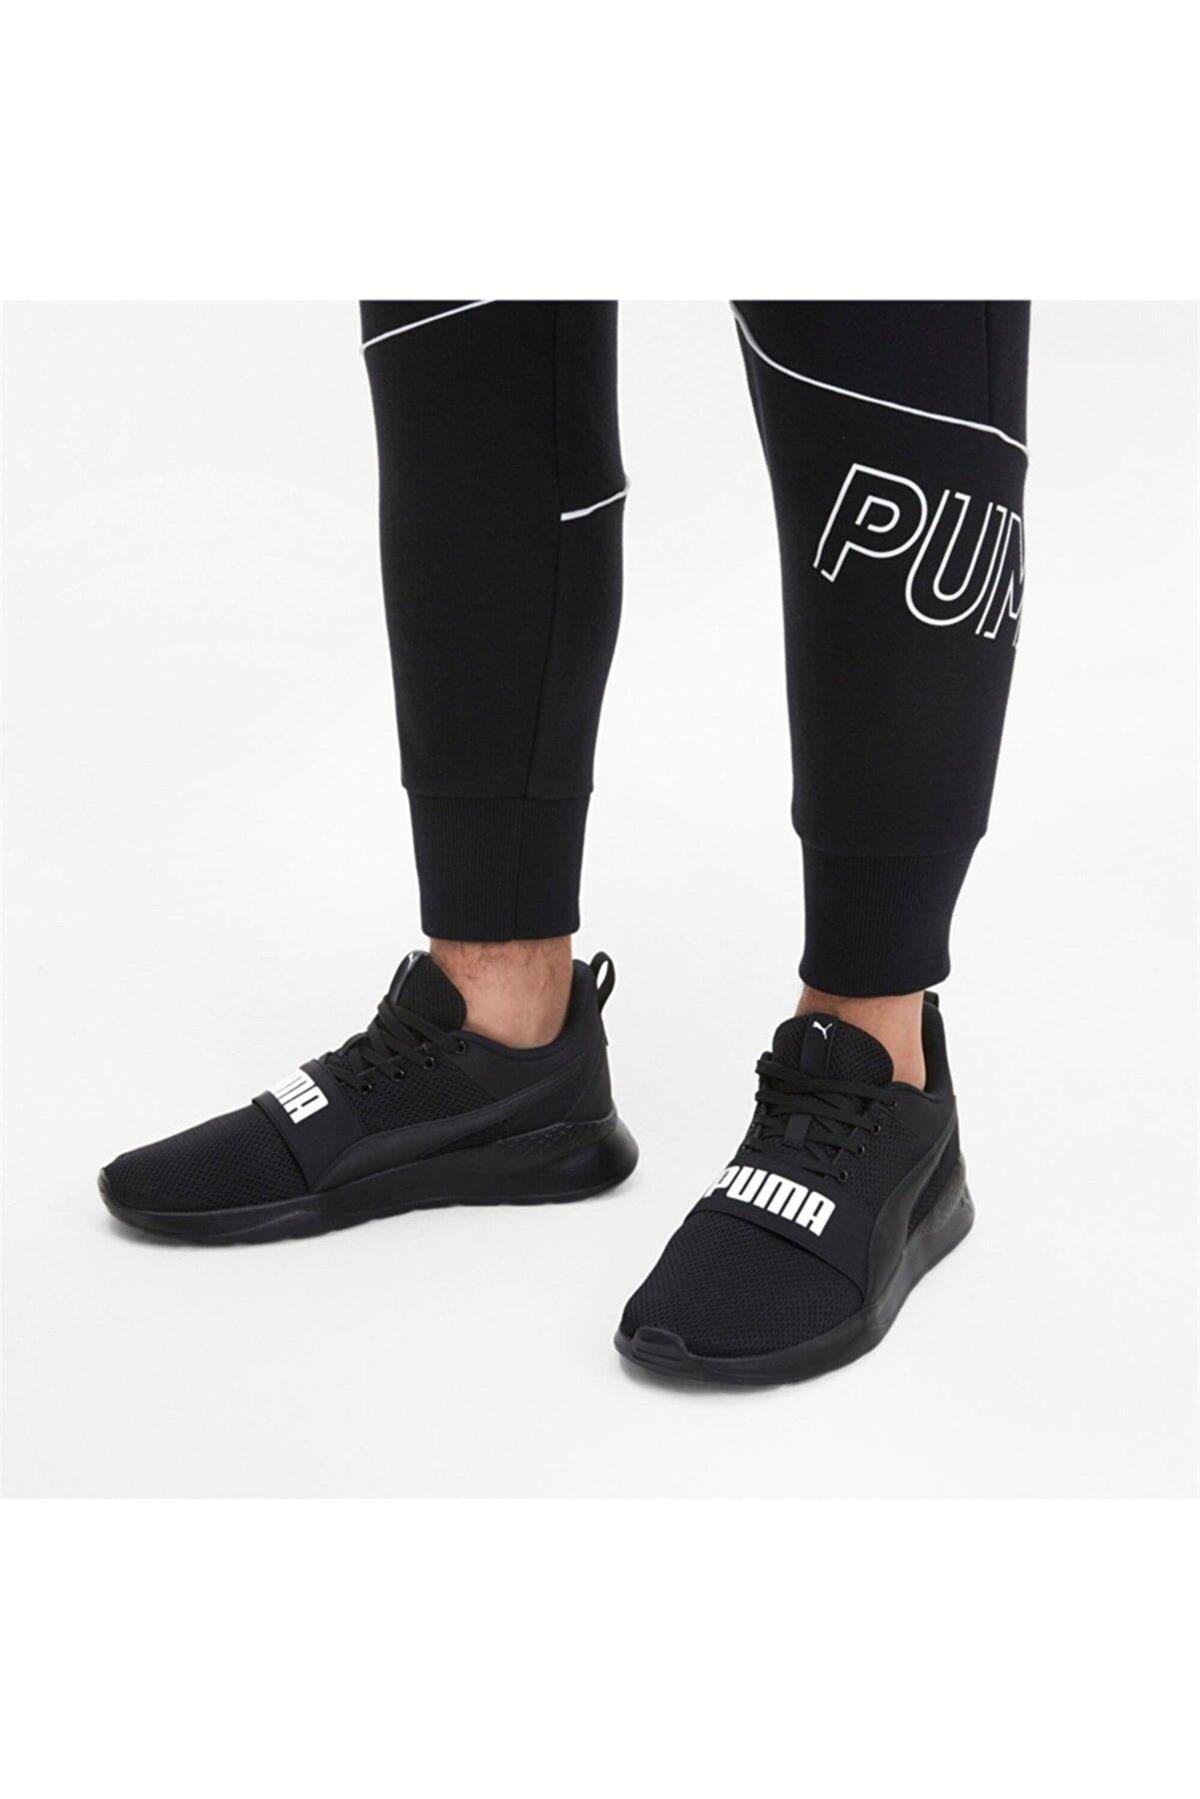 Puma Anzarun Lite Bold 372362 Siyah-Beyaz Kadın Spor Ayakkabı - Ayakmod